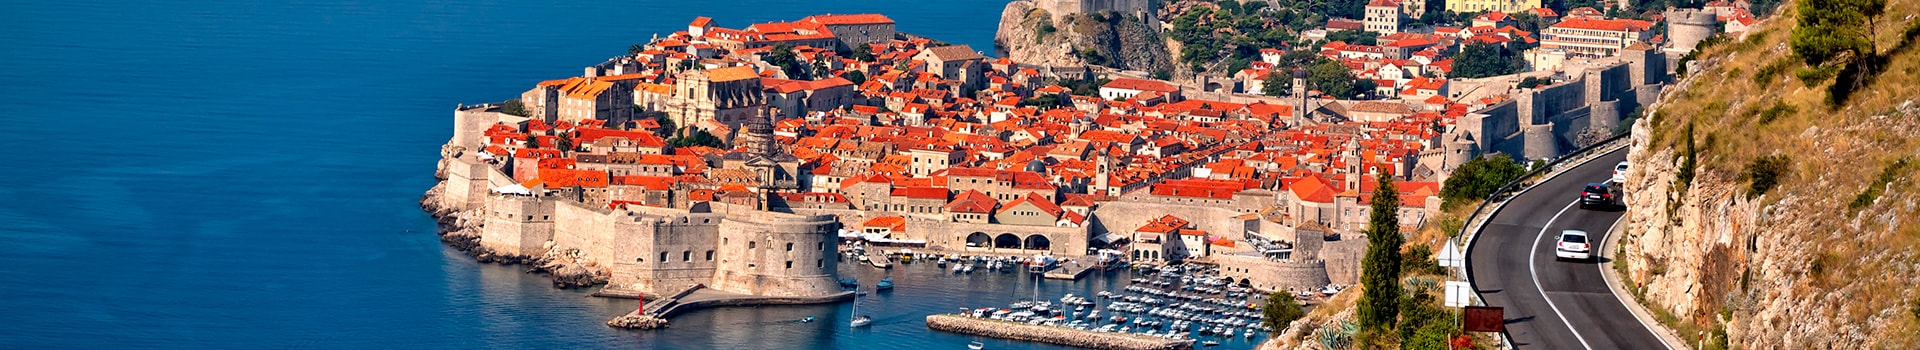 Asturias - Dubrovnik